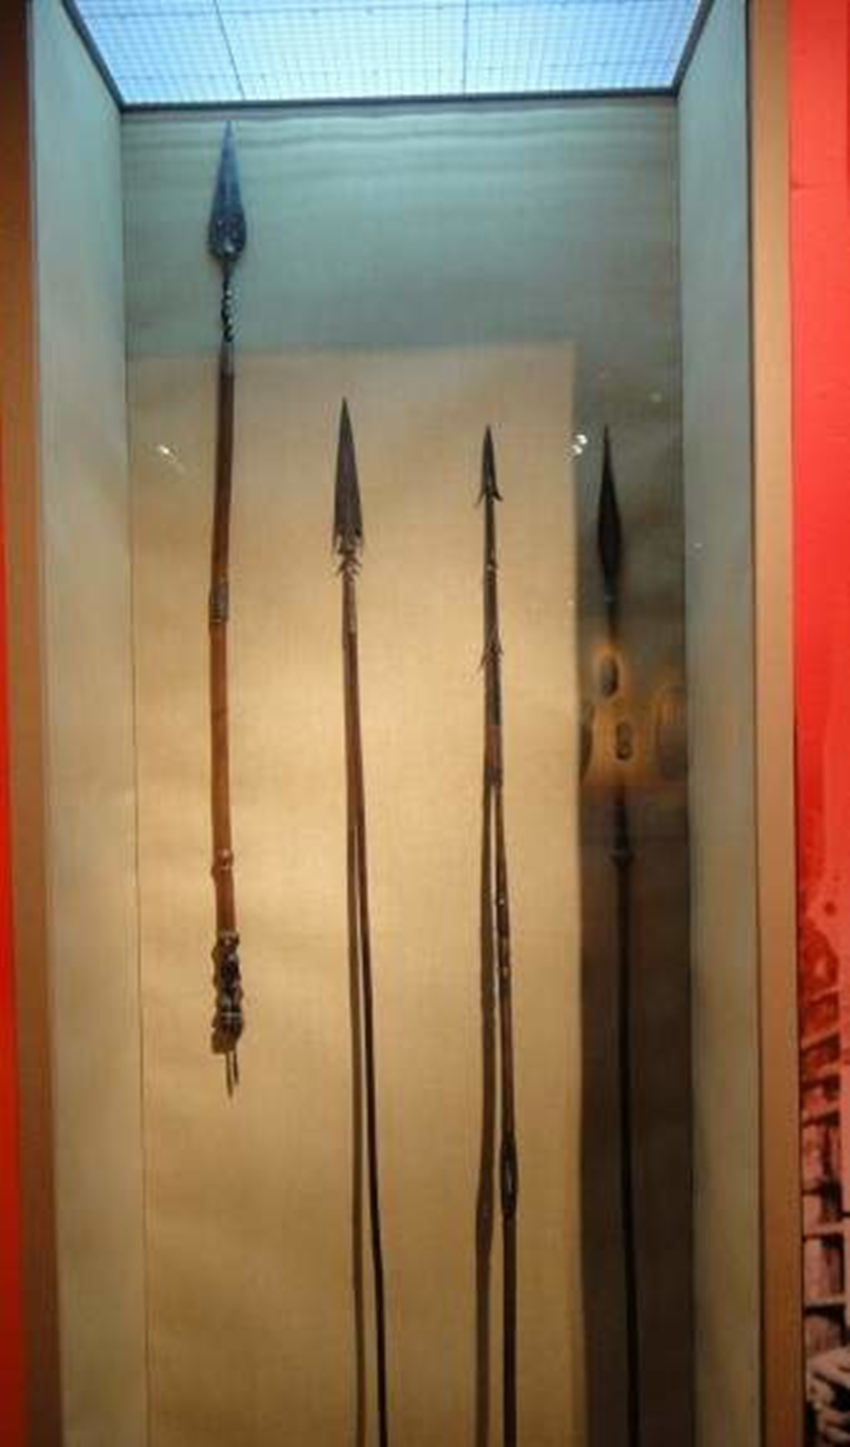 大剑是15世纪到17世纪一直使用的双手剑,对于欧洲人来说,这算是一种